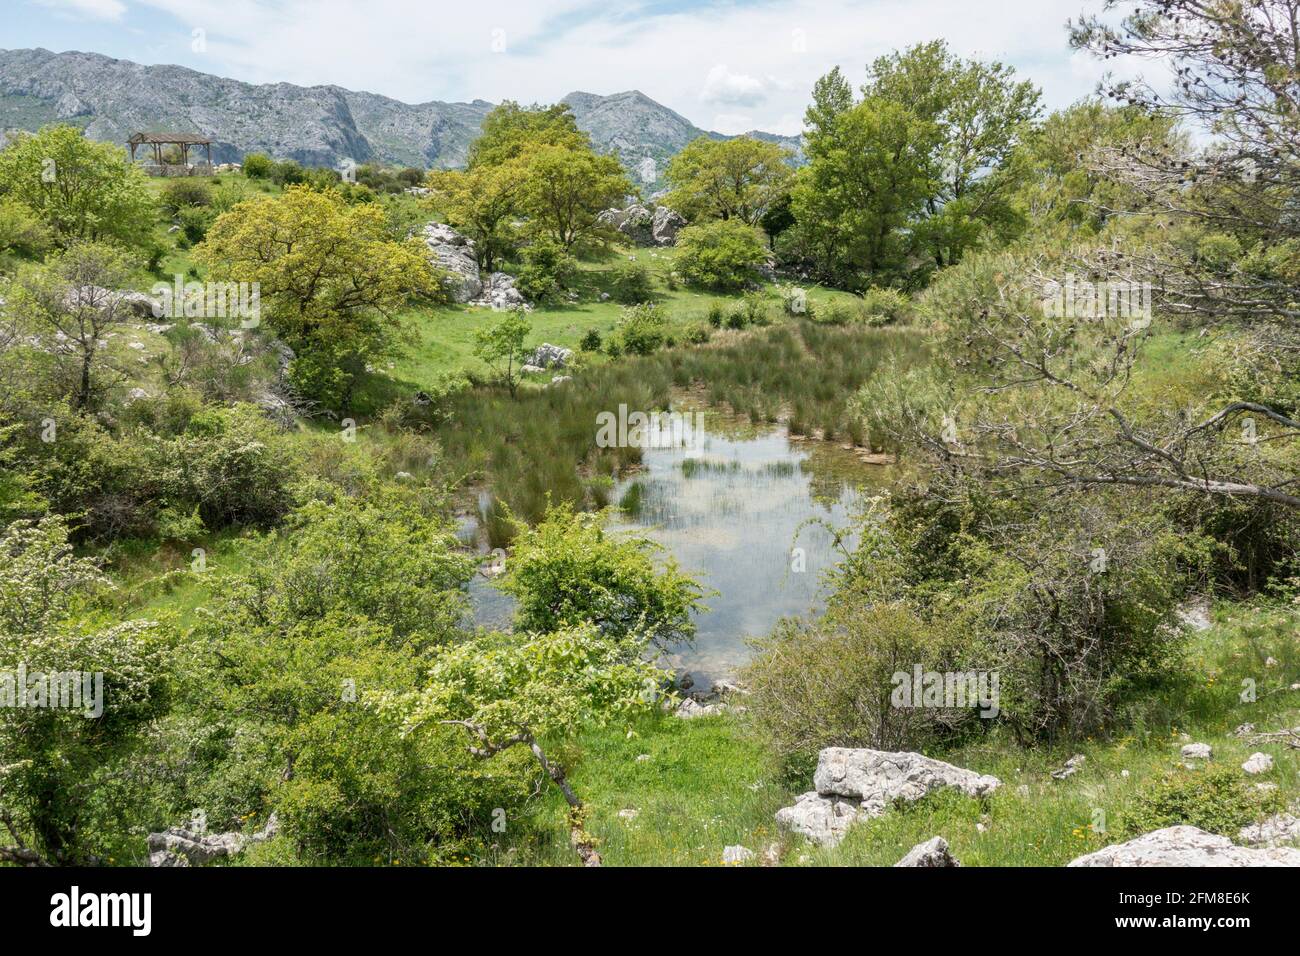 Natural pond in Sierra de Camarolos, Hondonero, Villanueva del Rosario, Andalusia, Southern Spain Stock Photo